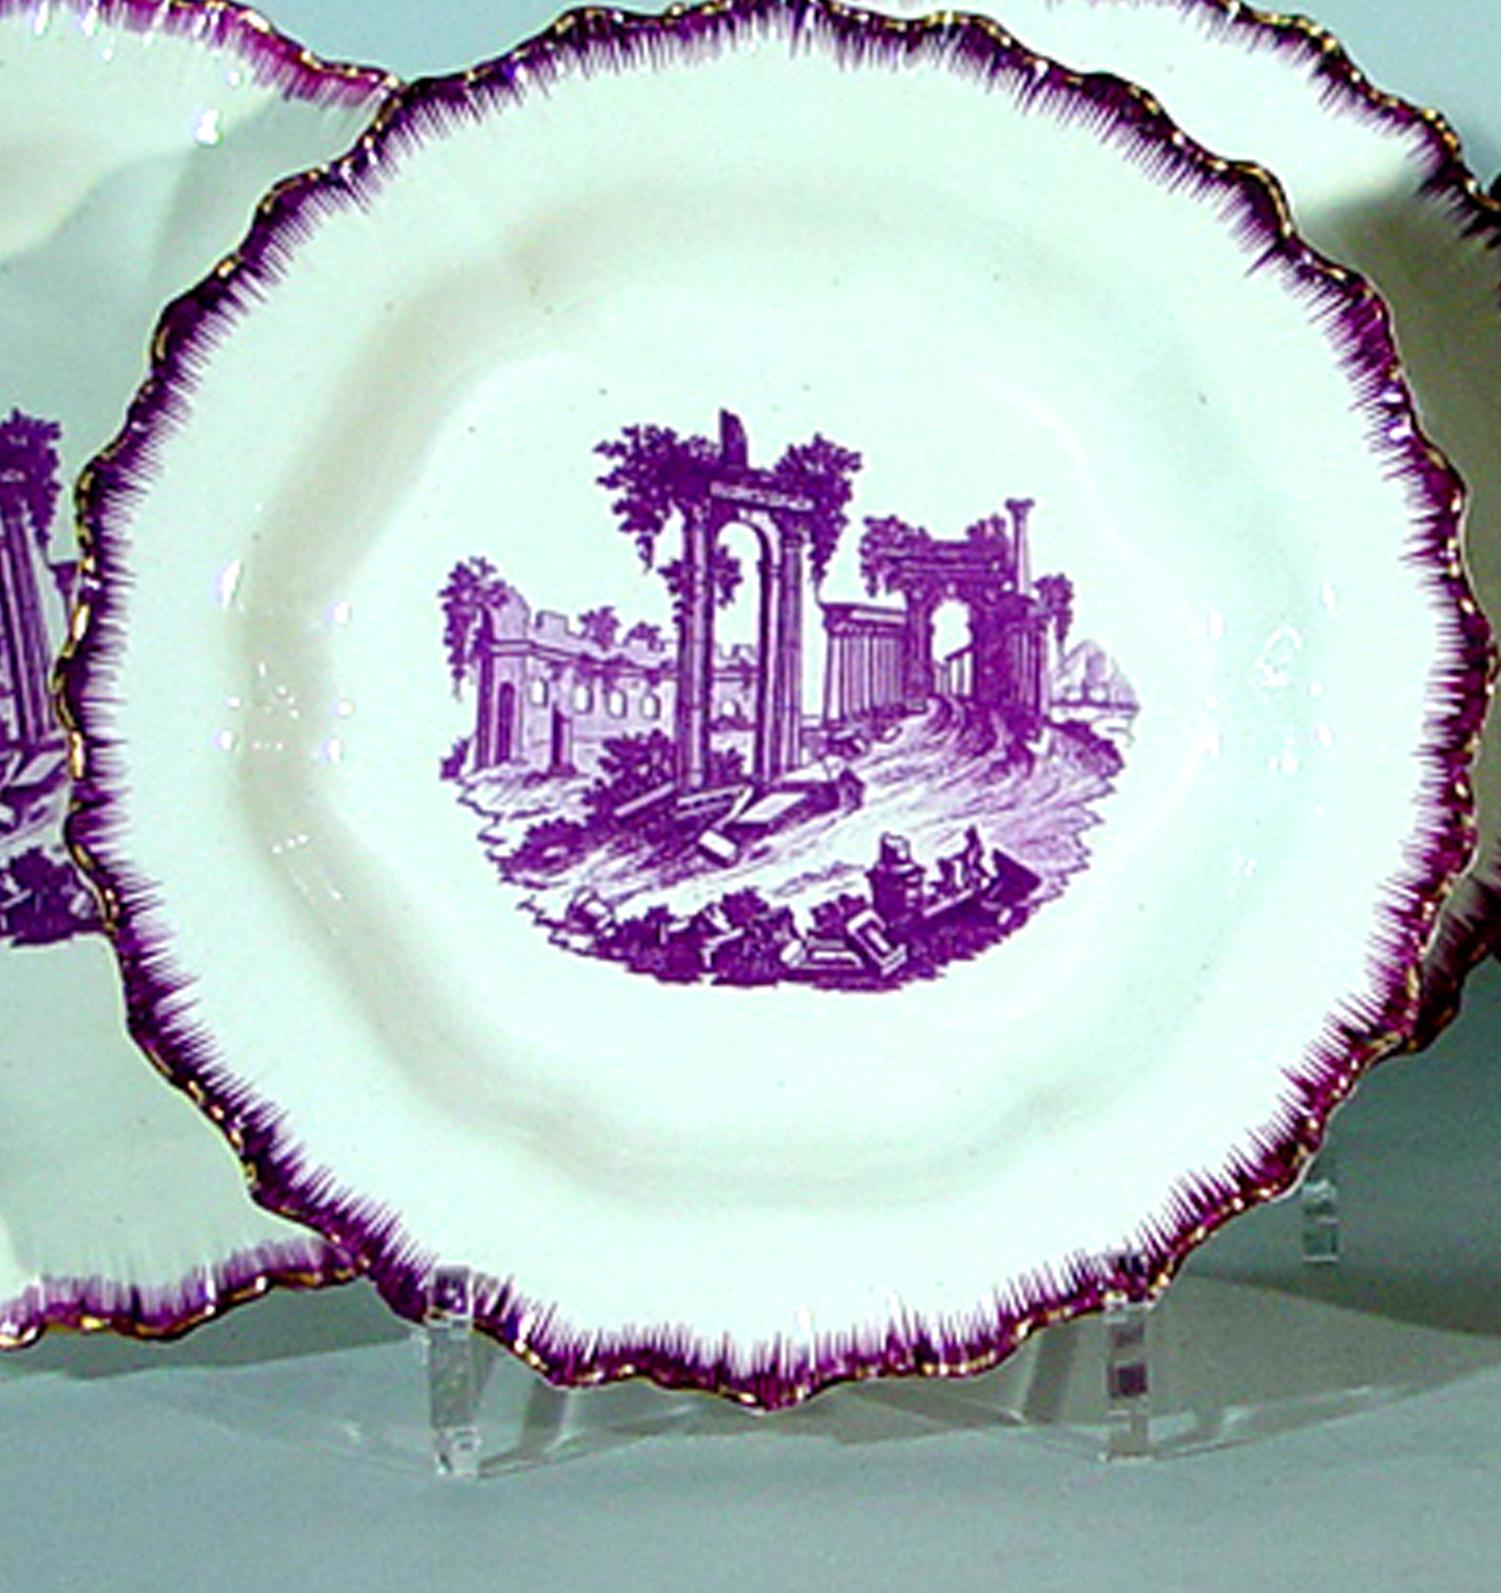 Les assiettes à bord en coquille de Neale & Co. de couleur puce sont chacune décorées d'un transfert violet avec des personnages au premier plan dans un paysage de ruines classiques. Les bords, également dotés d'une bordure plumée de couleur puce